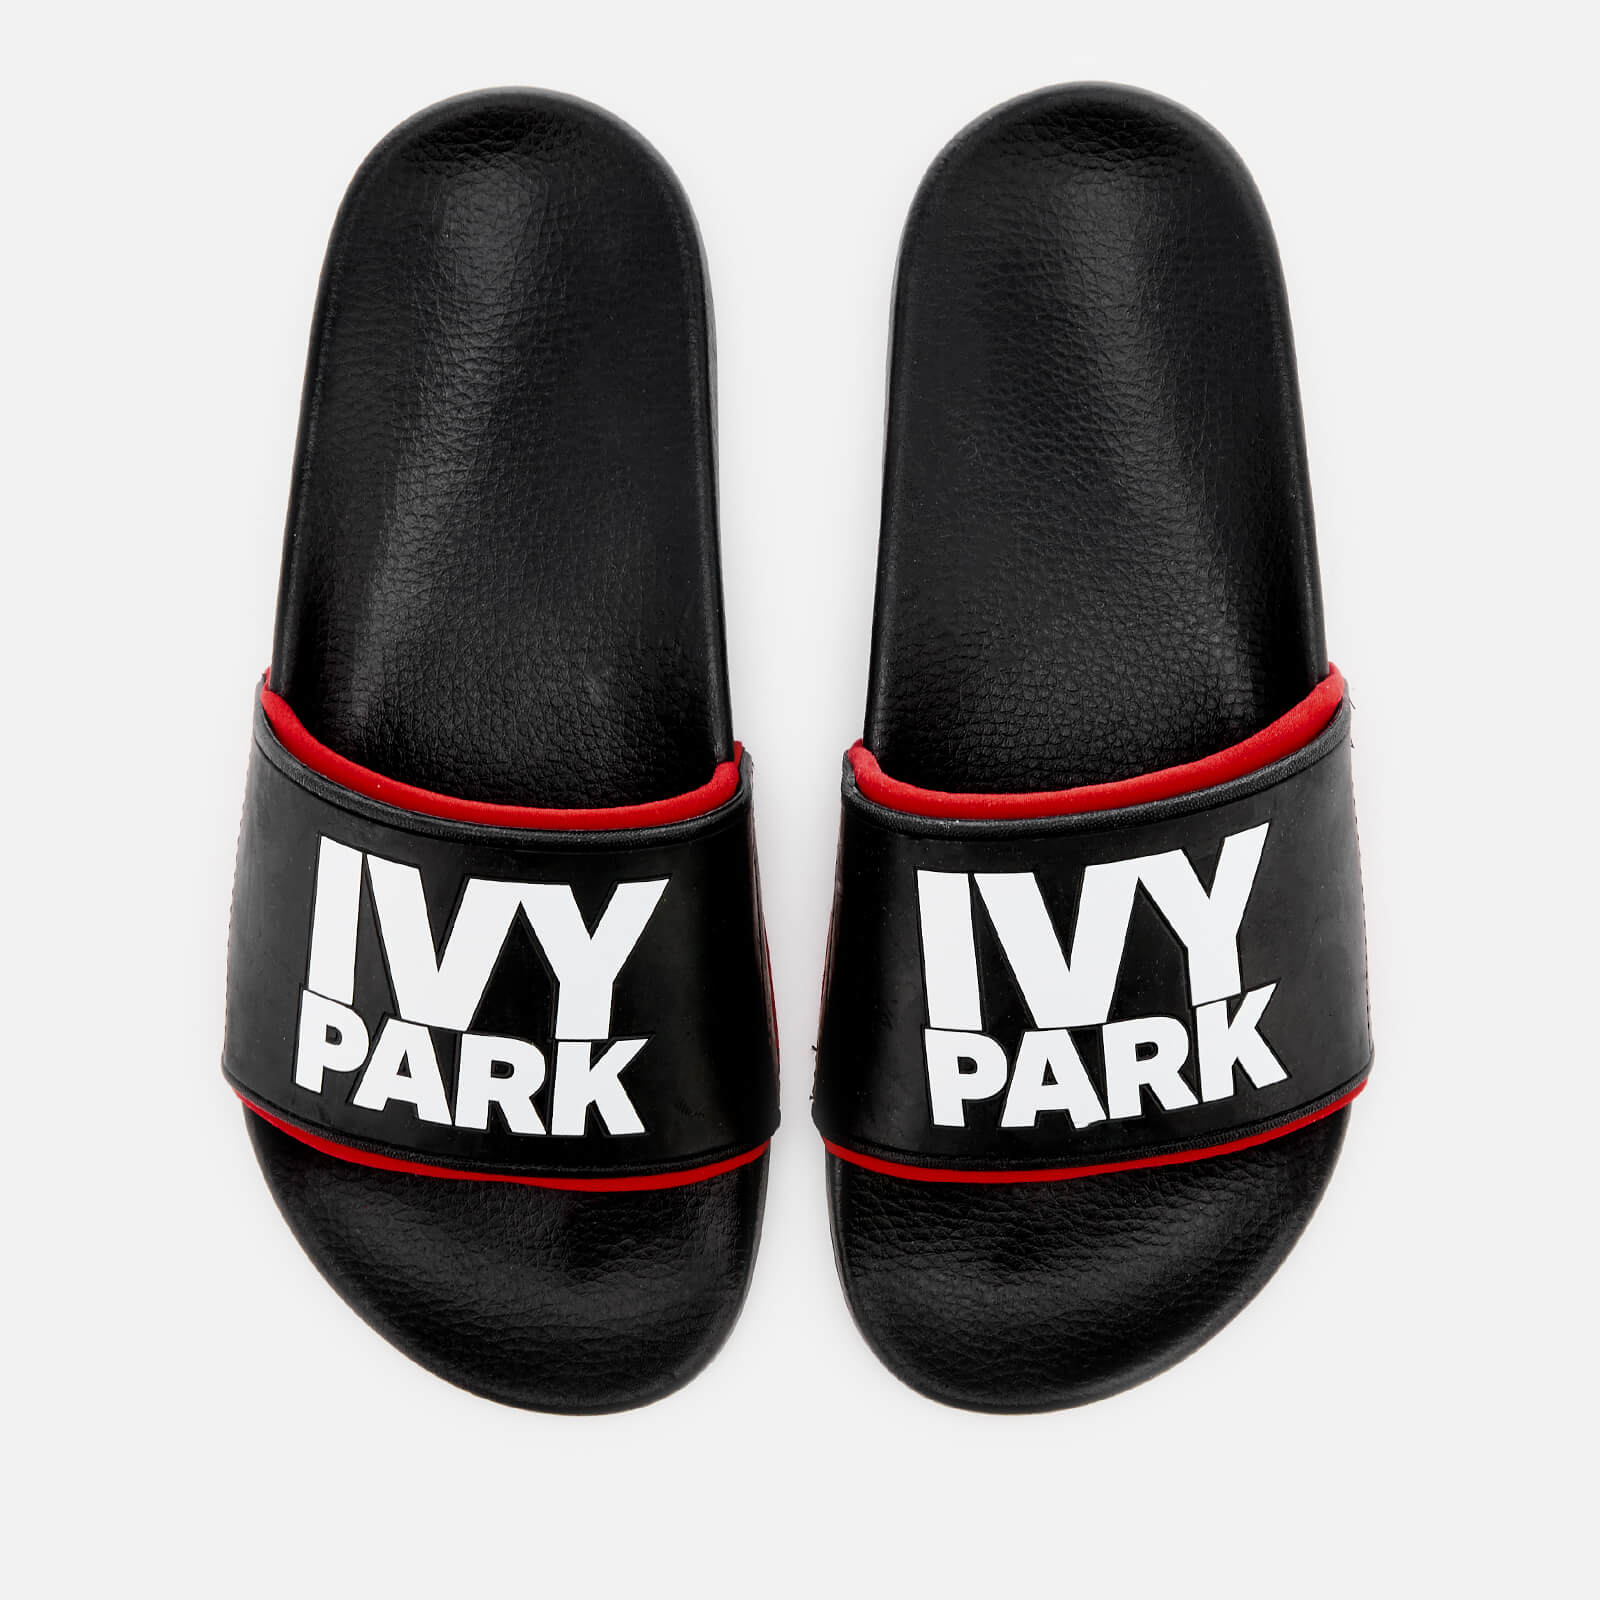 ivy park flip flops black